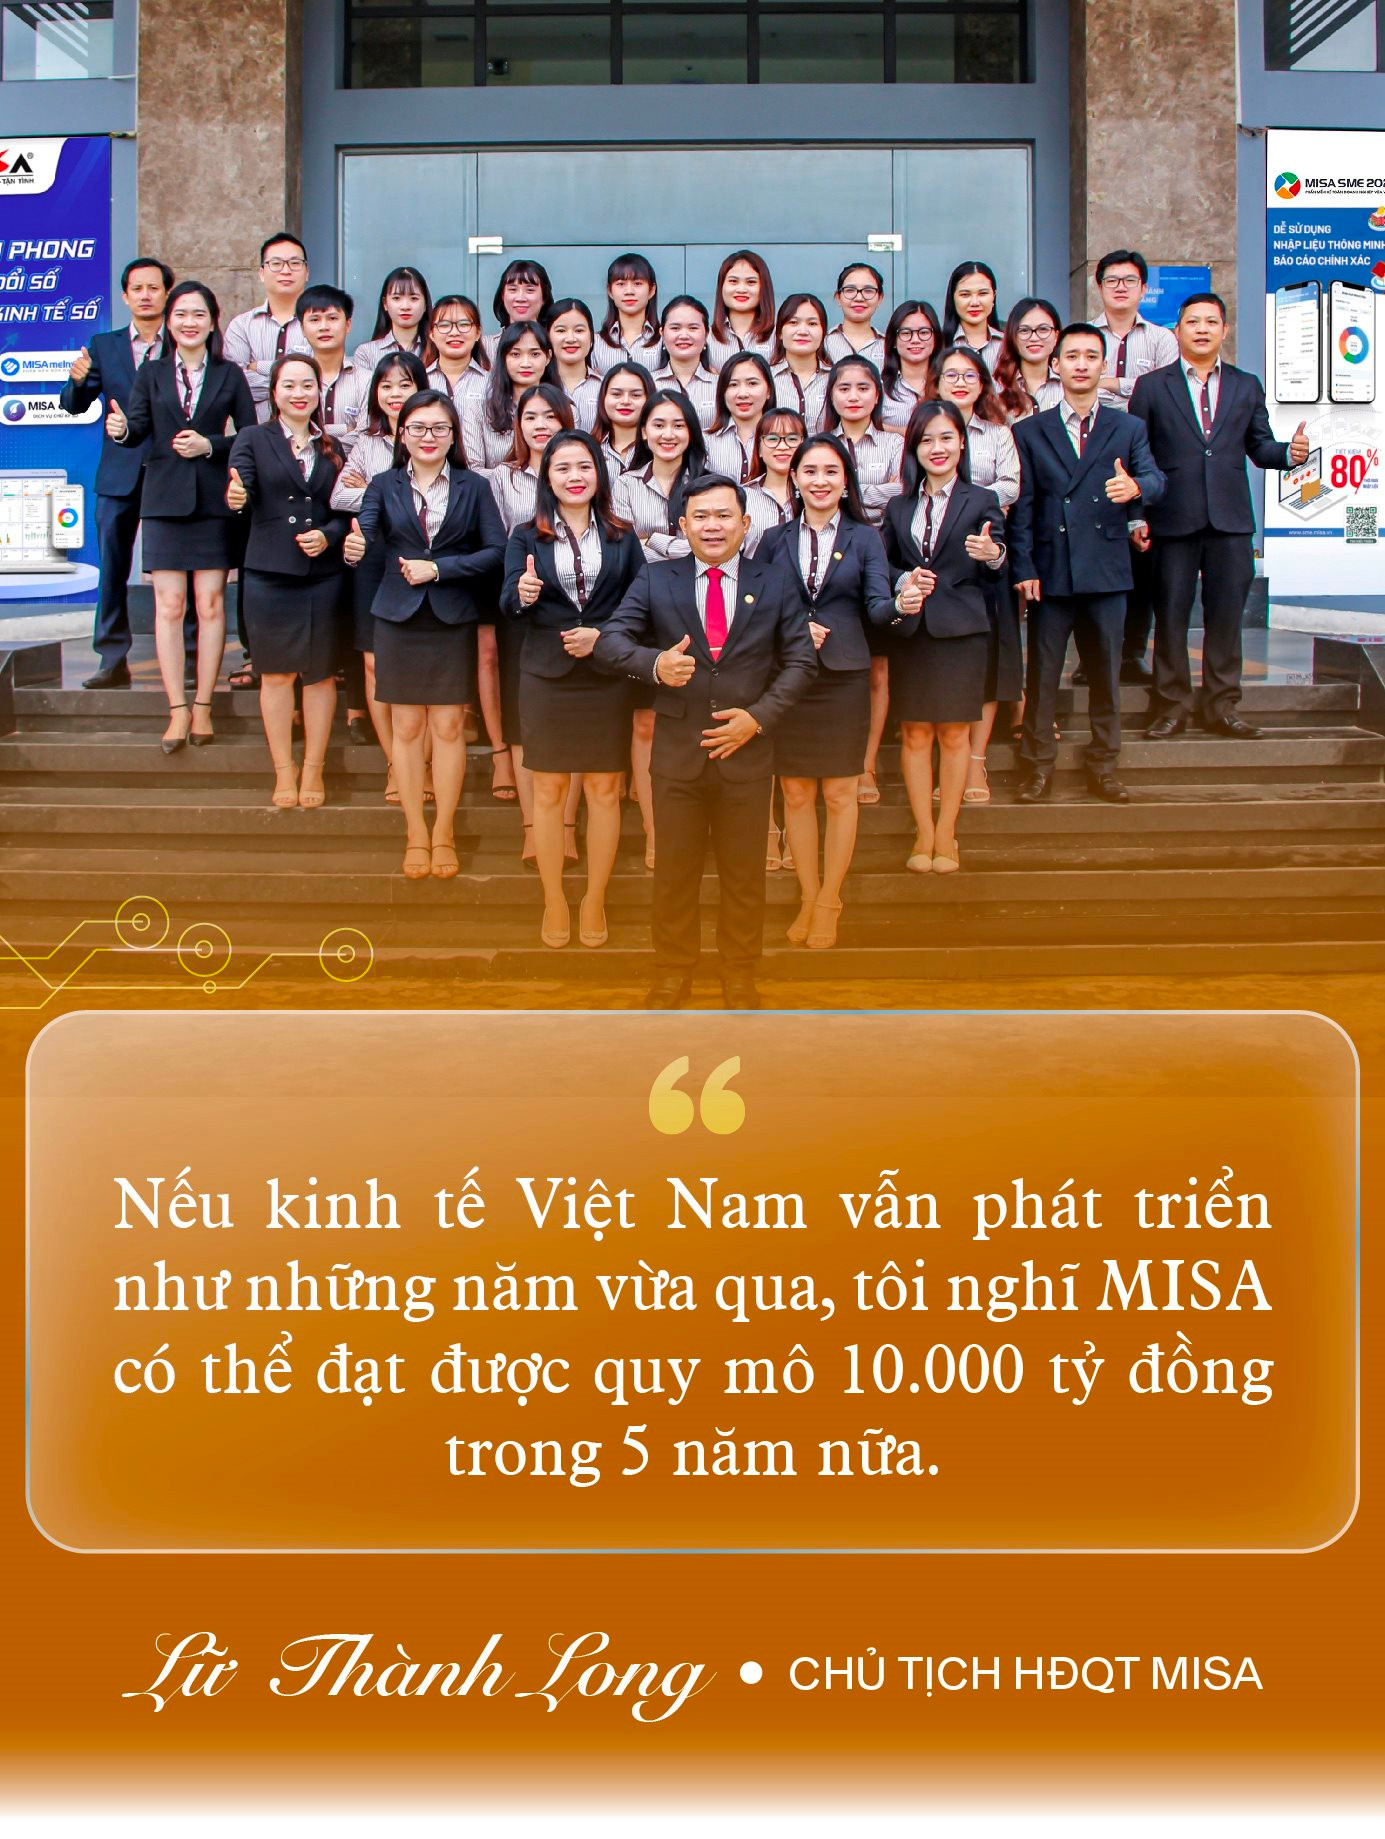 ‘Phần mềm kế toán phổ biến nhất’ Việt Nam tiên phong ‘lên mây’ và lý do vui vẻ ‘vứt hàng triệu USD qua cửa sổ’ - Ảnh 8.